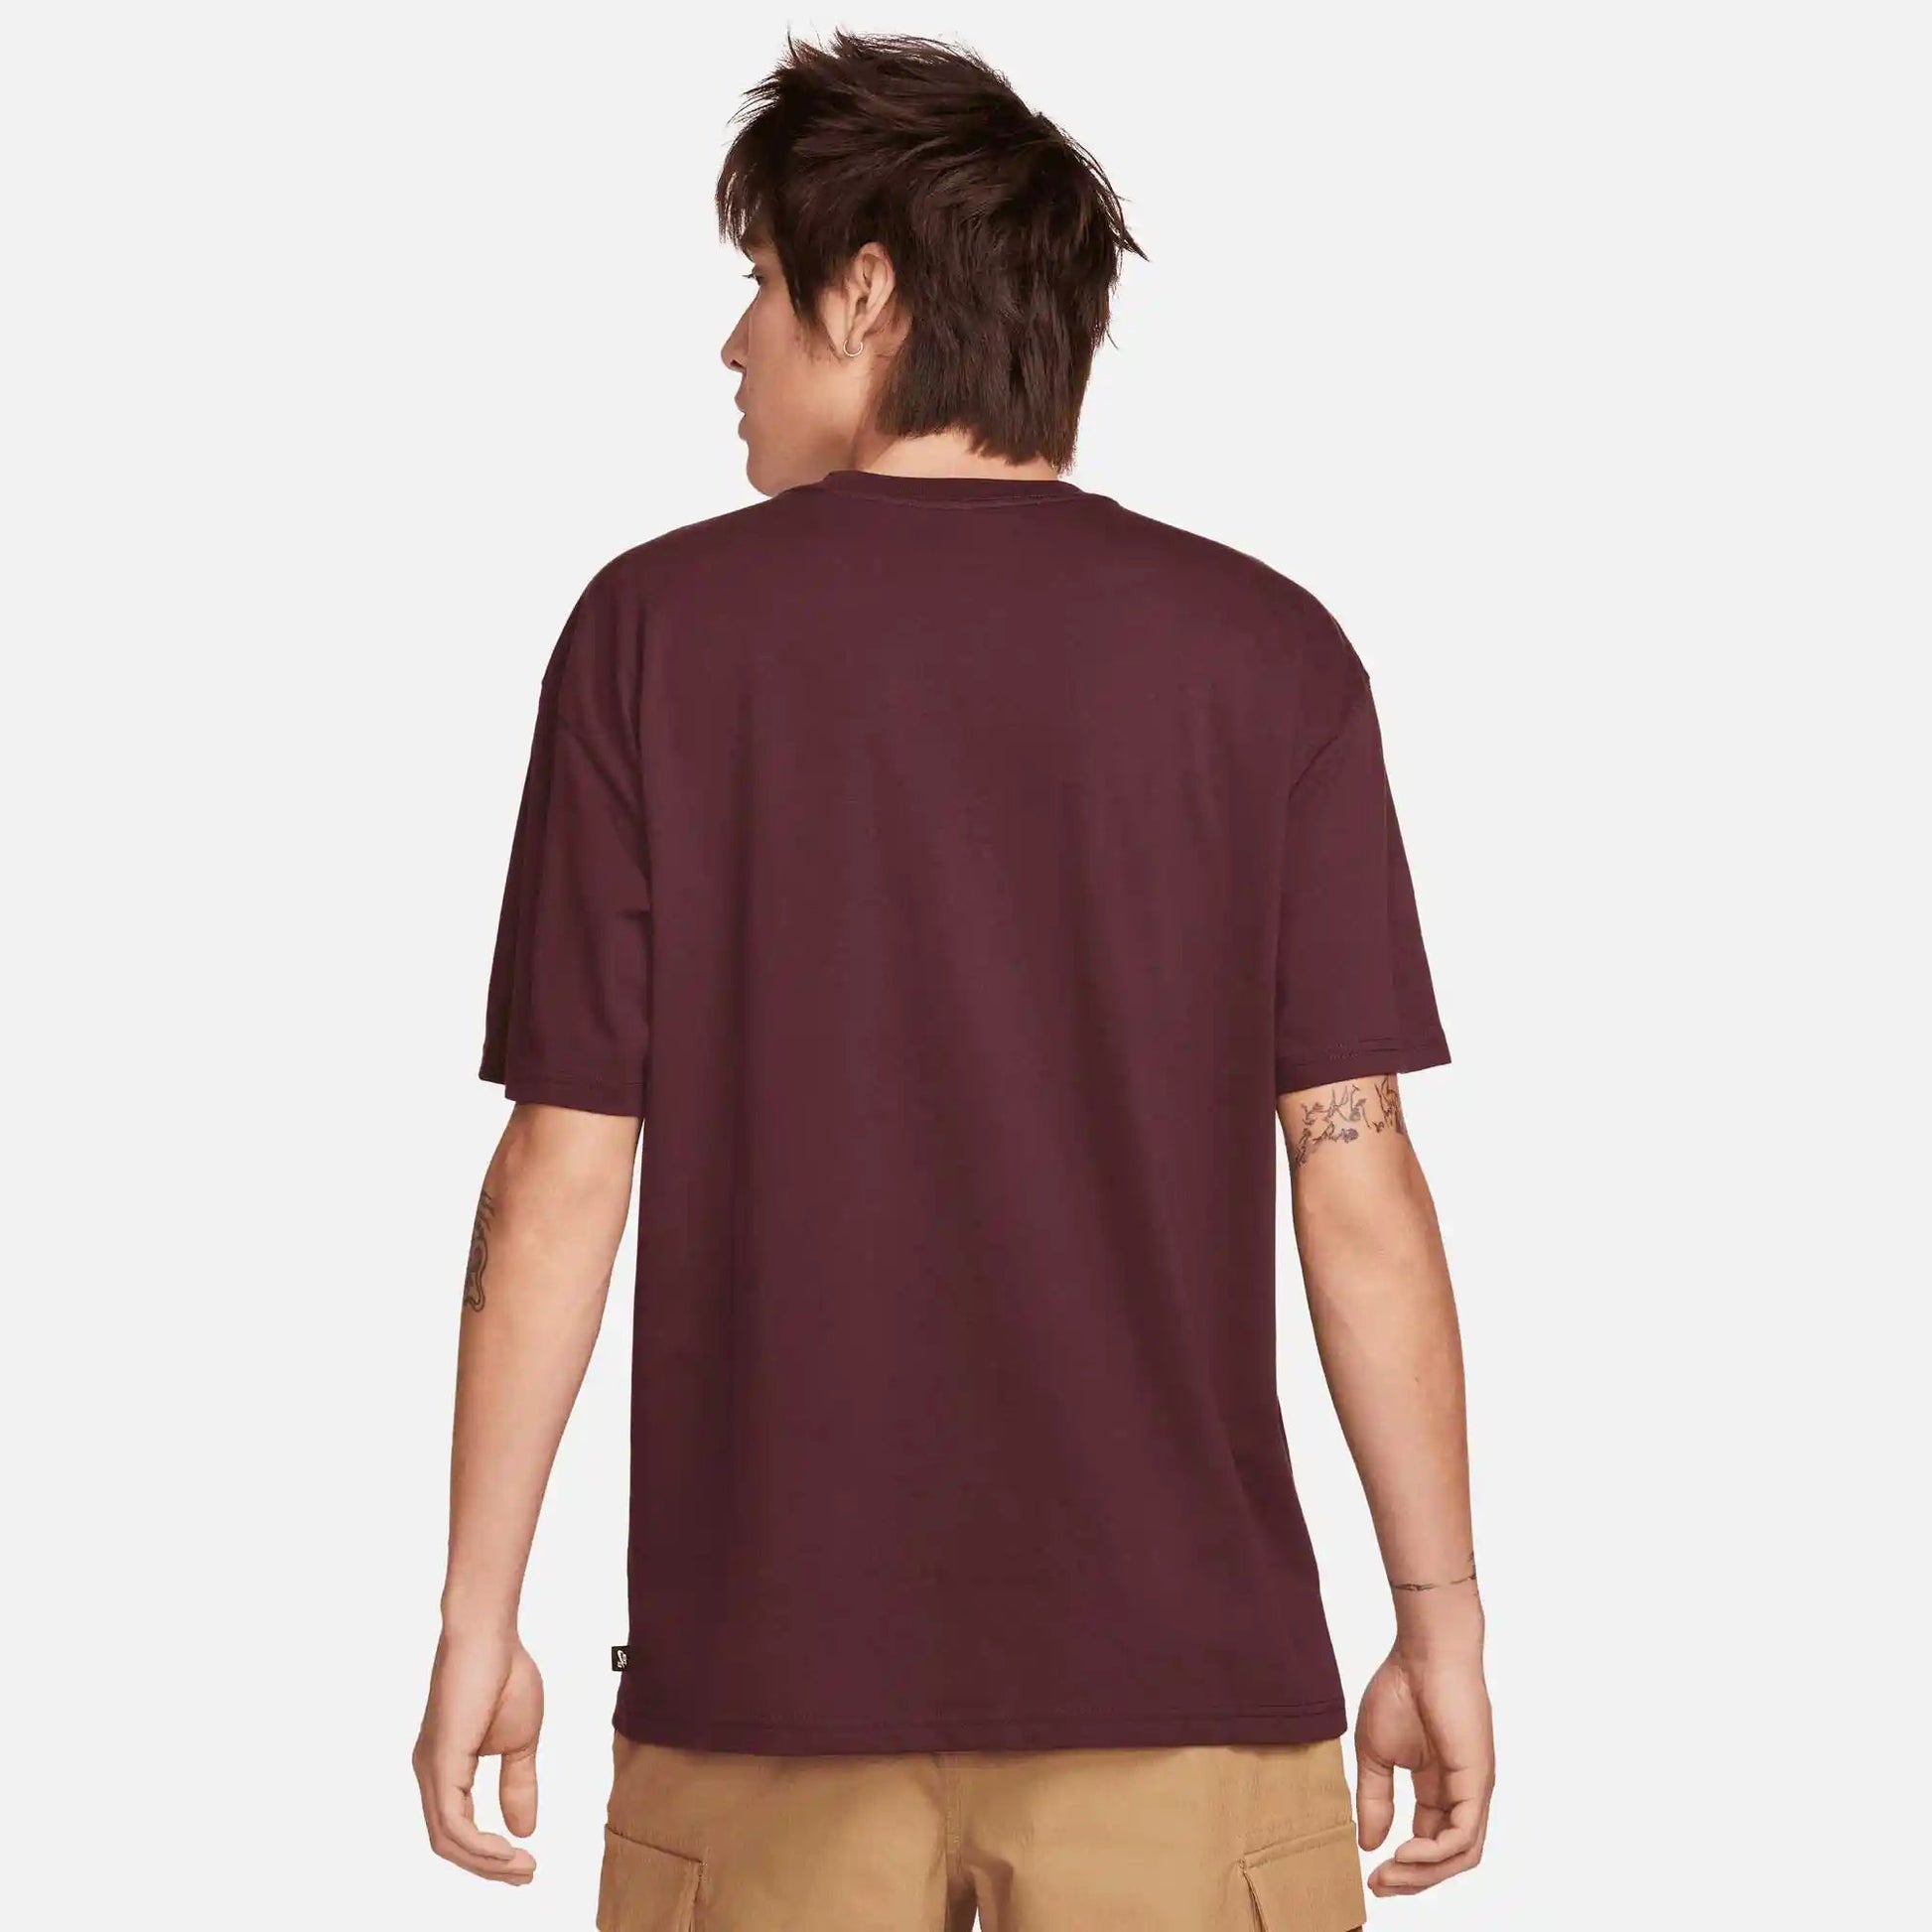 Nike SB Logo Skate T-Shirt, burgundy crush/white - Tiki Room Skateboards - 5